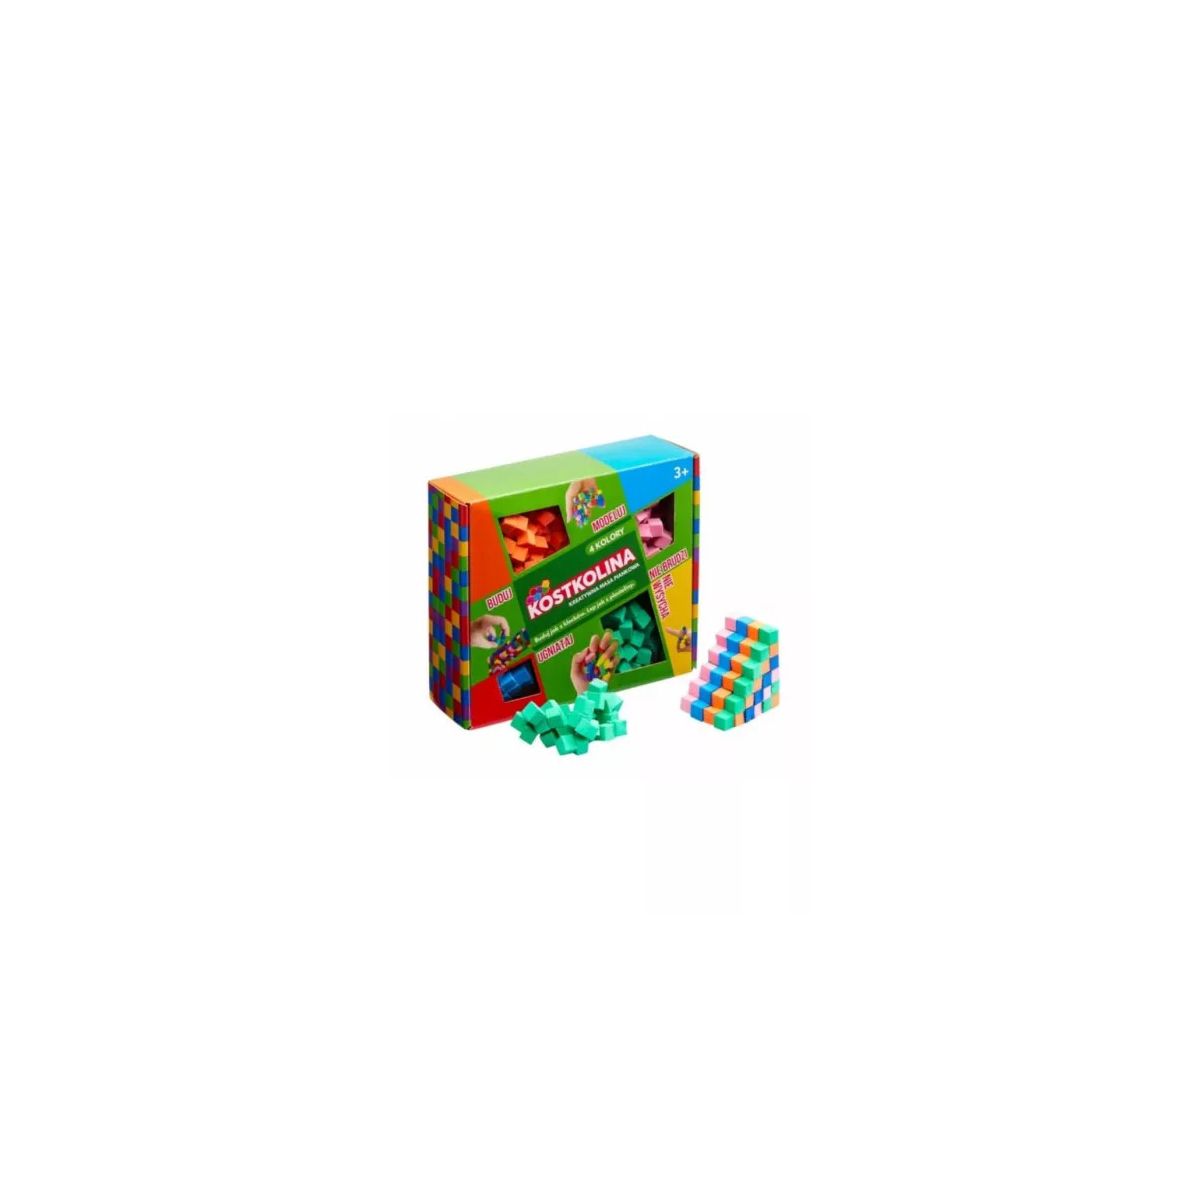 Zestaw kreatywny dla dzieci Kostkolina green 4 kolory Art And Play S.c. (13080104)